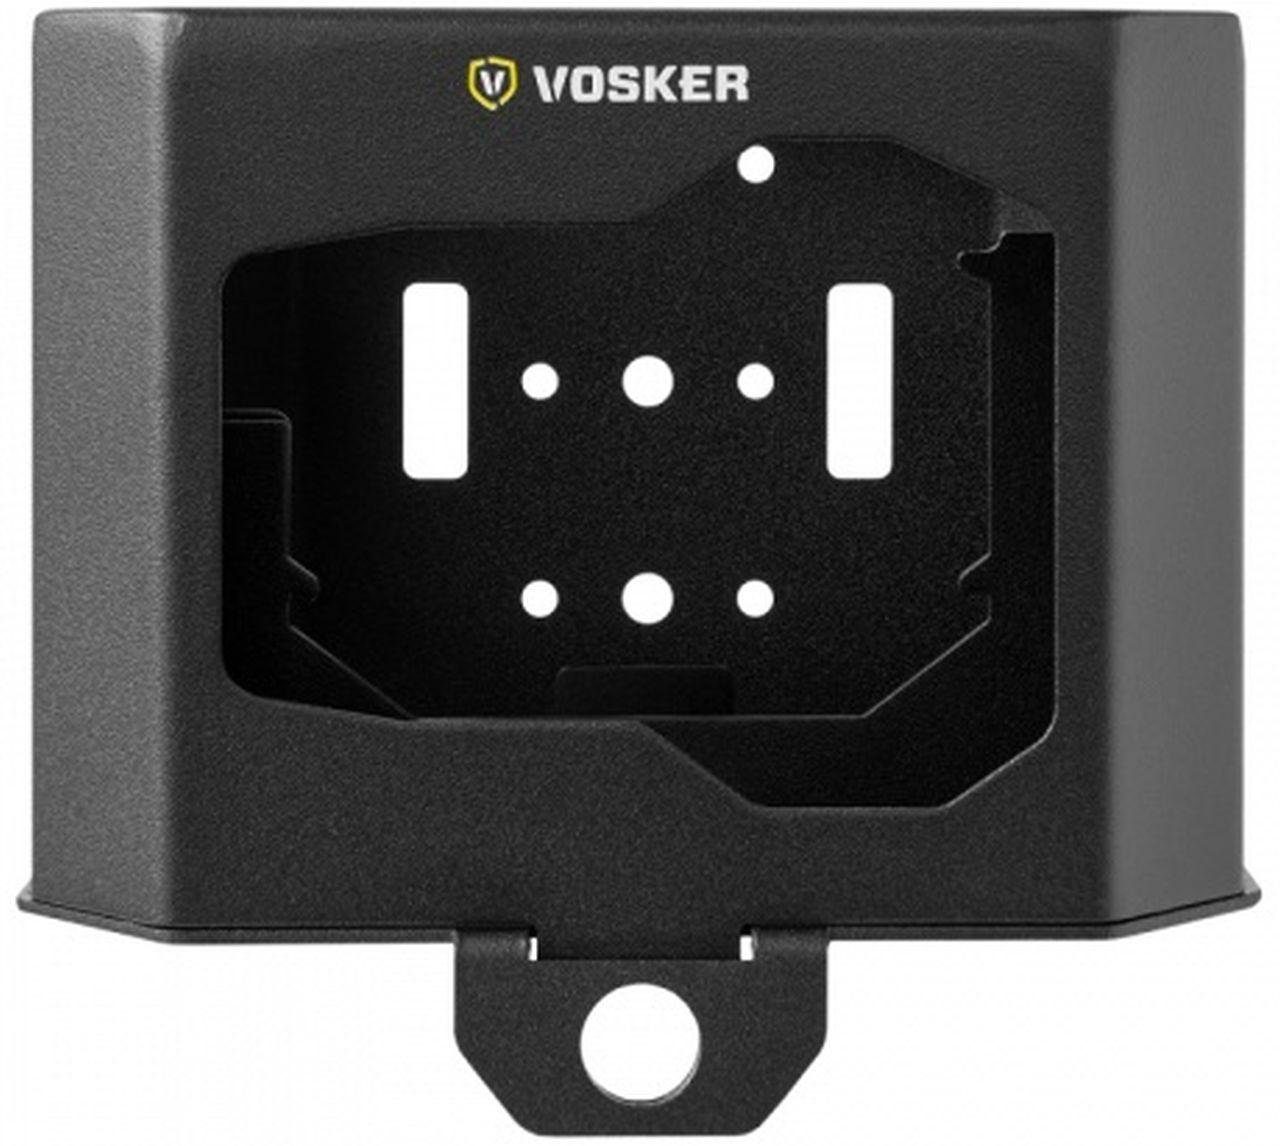 Vosker V-SBOX2 Metallgehäuse Objektivzubehör für V150, V300